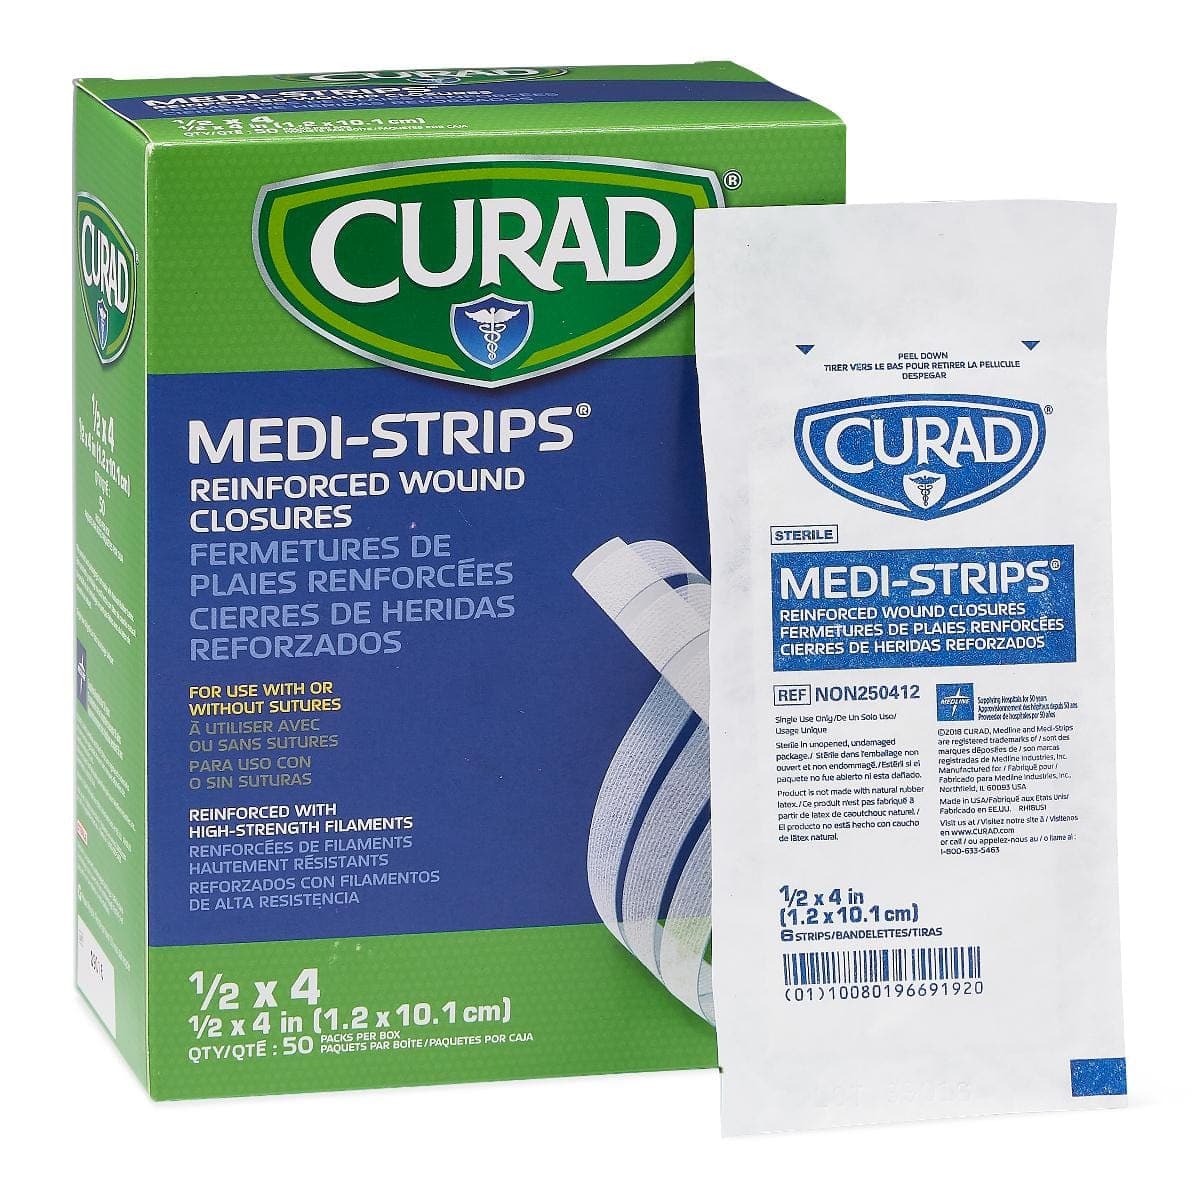 Medline 1/2"x4" / Case of 1200 Medline CURAD Medi-Strip Reinforced Wound Closures